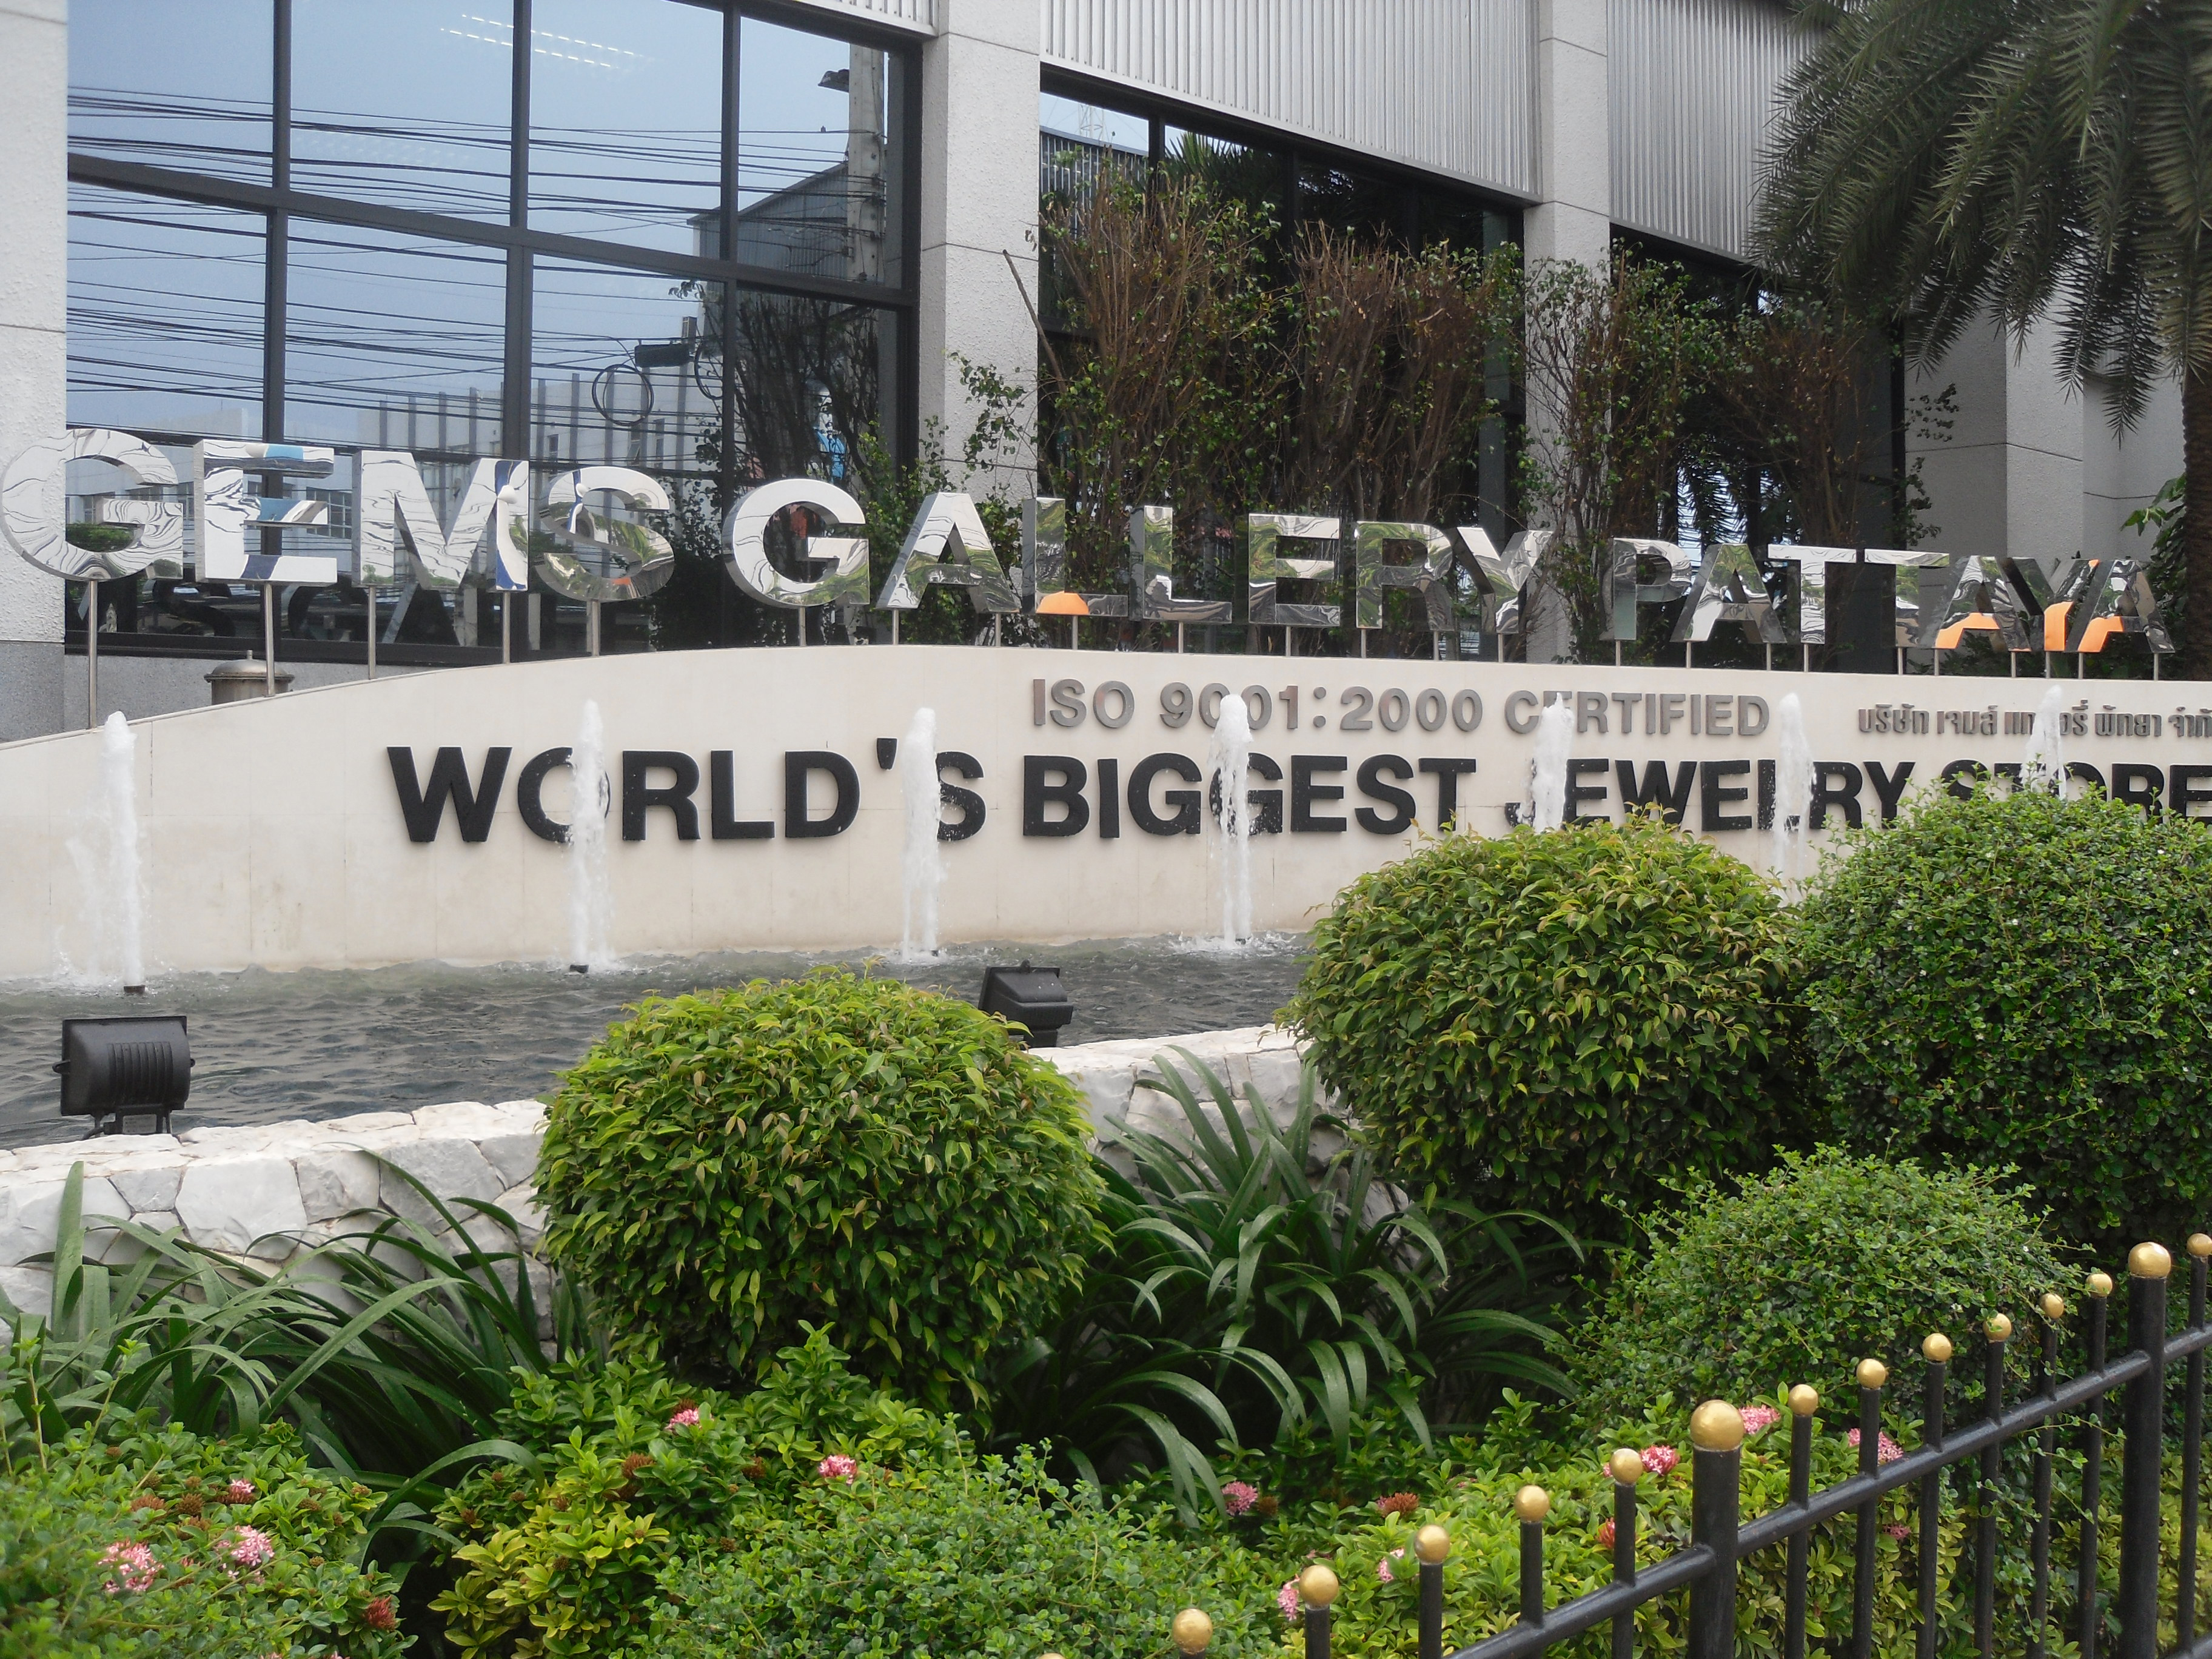 Trung tâm Đá quý Gems Gallery - Gems Gallery Pattaya - Pattaya - Thái Lan